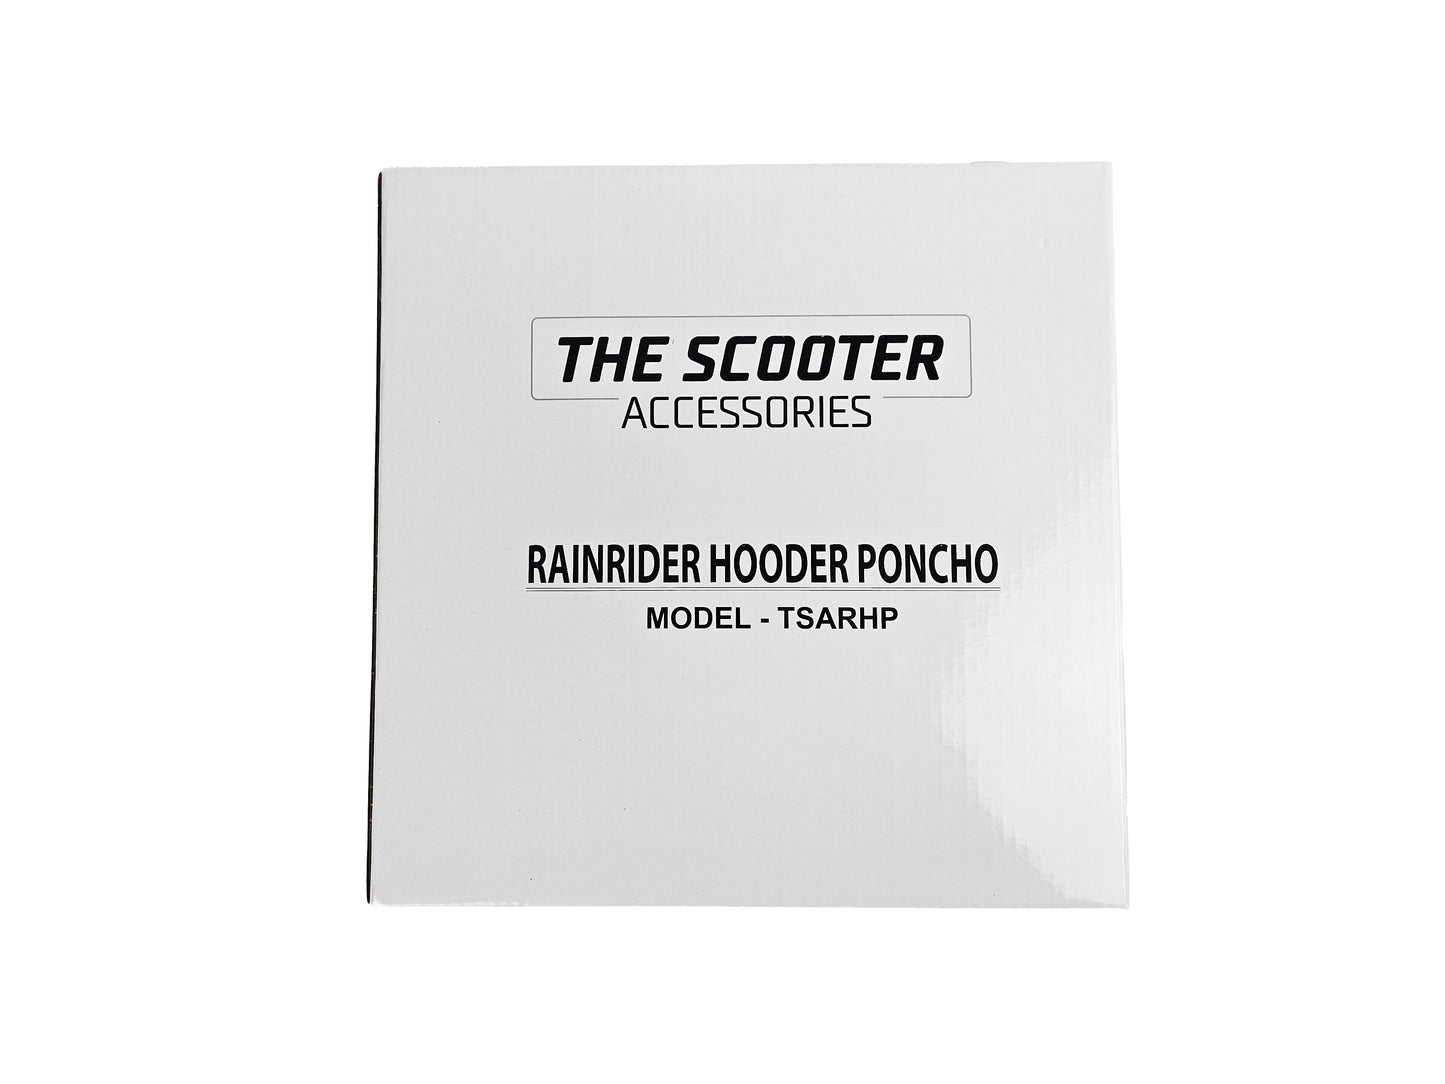 RainRider Hooded Poncho